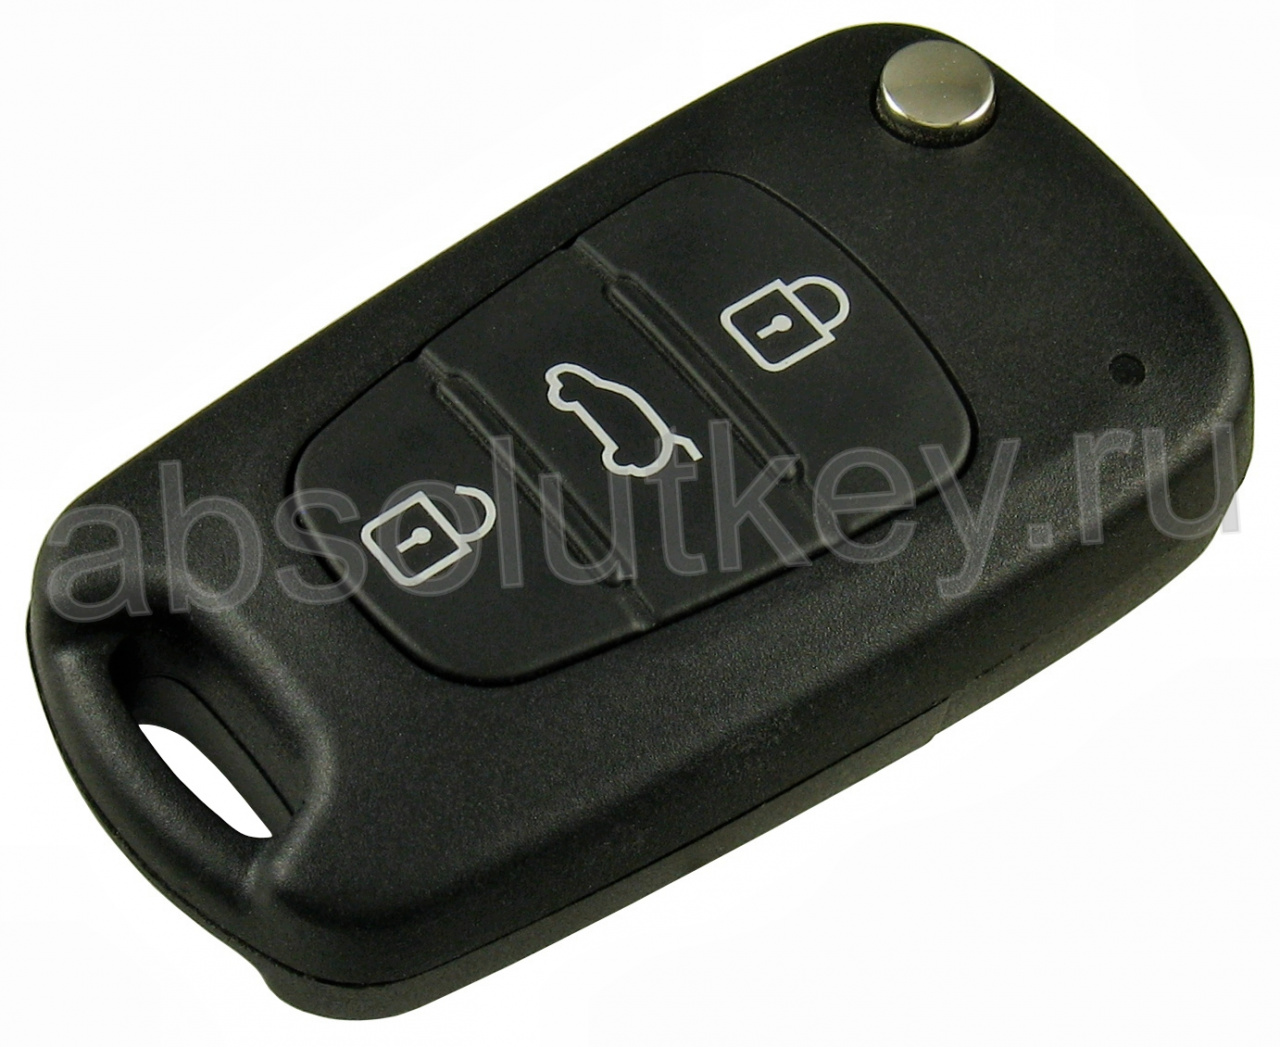 Ключ для Kia Sportage 2010-, Euro., 3 кнопки